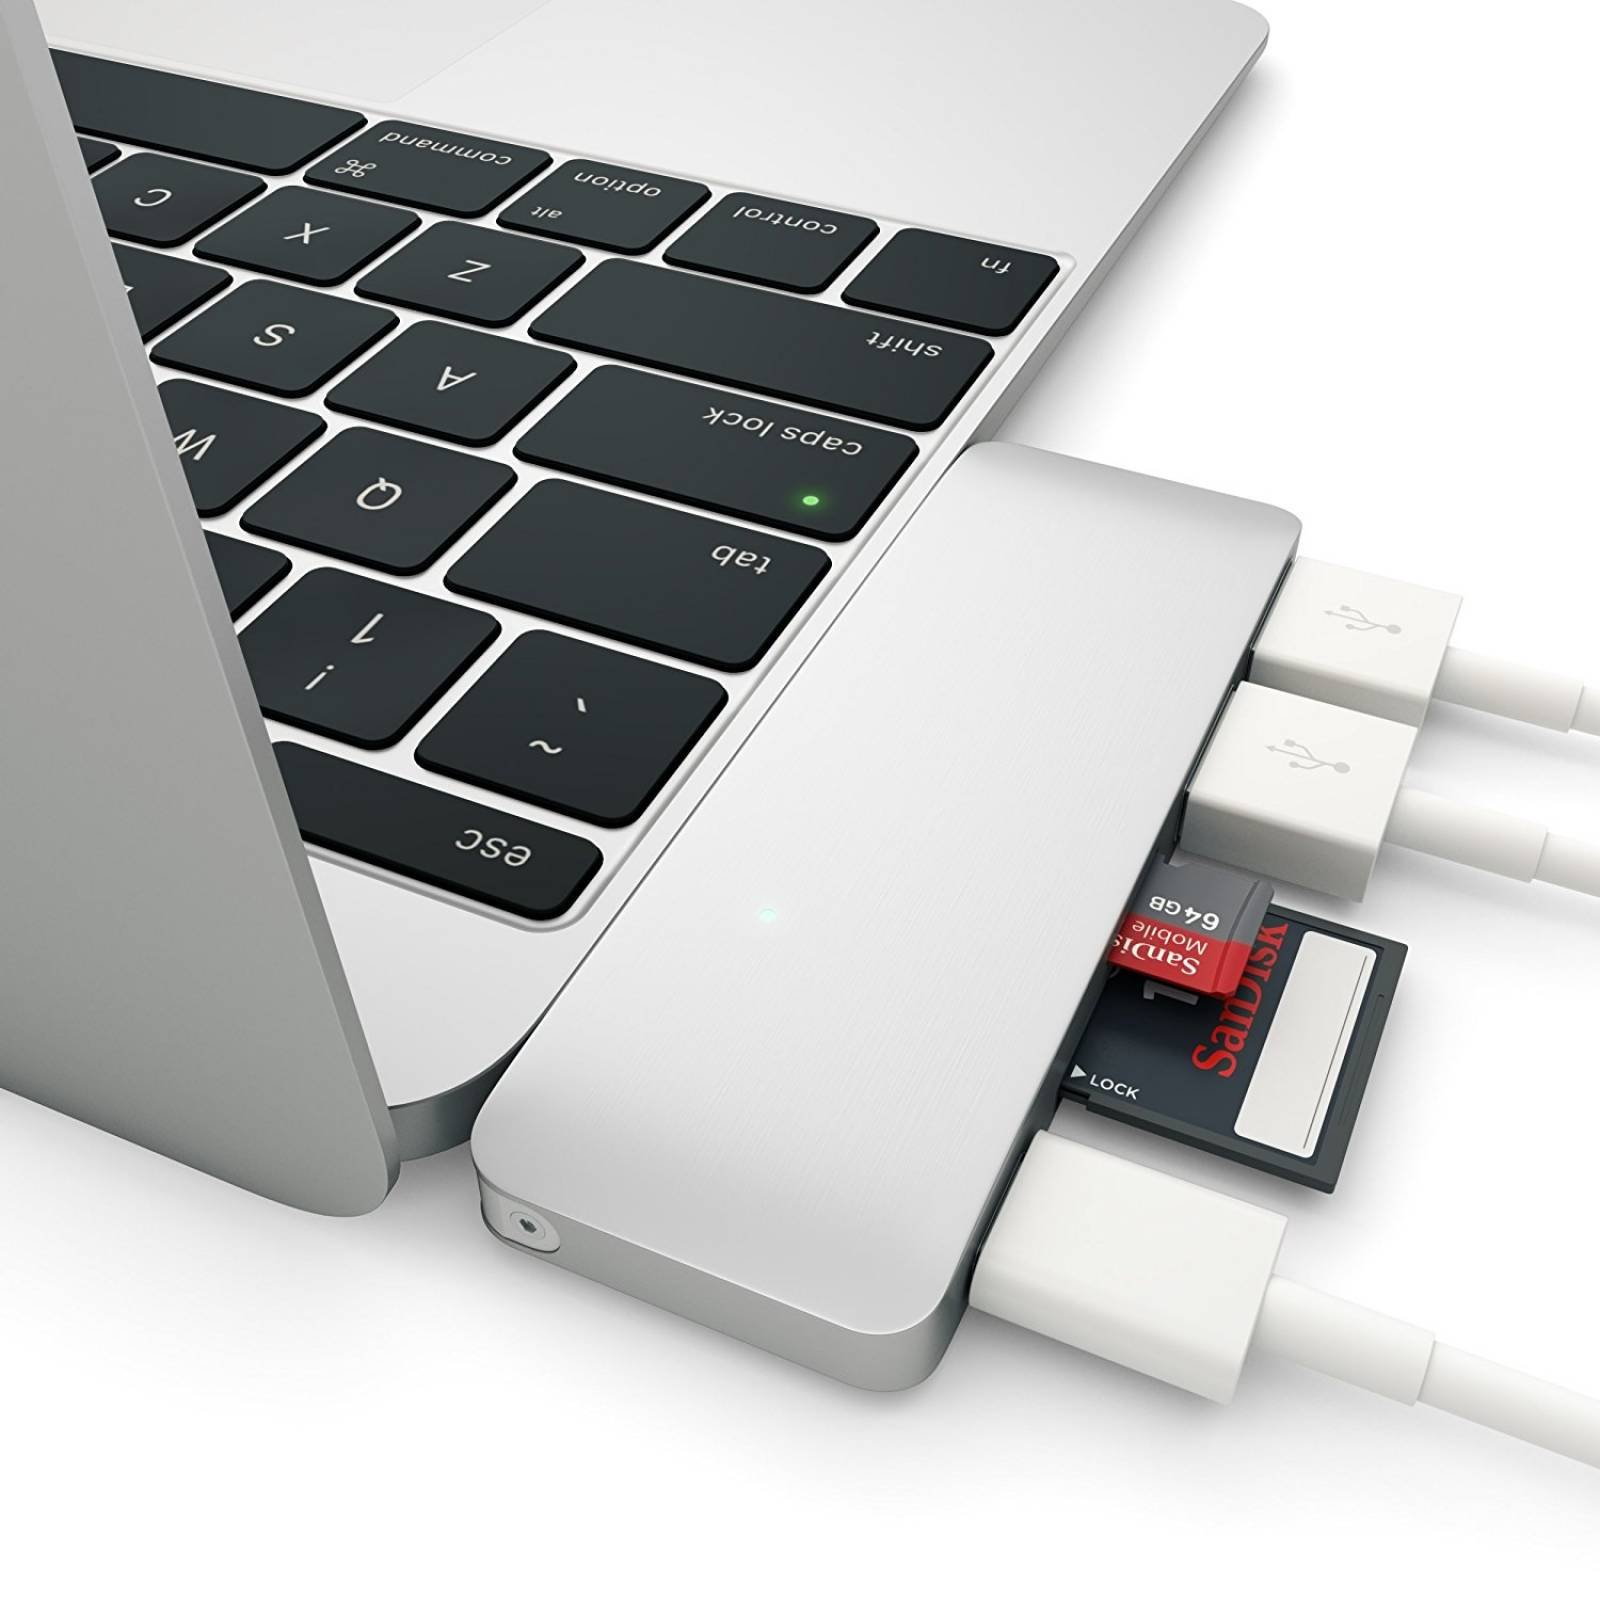 Satechi tipo C USB 3,0 3 1 Combo Hub MacBook 12"(con  -Plata